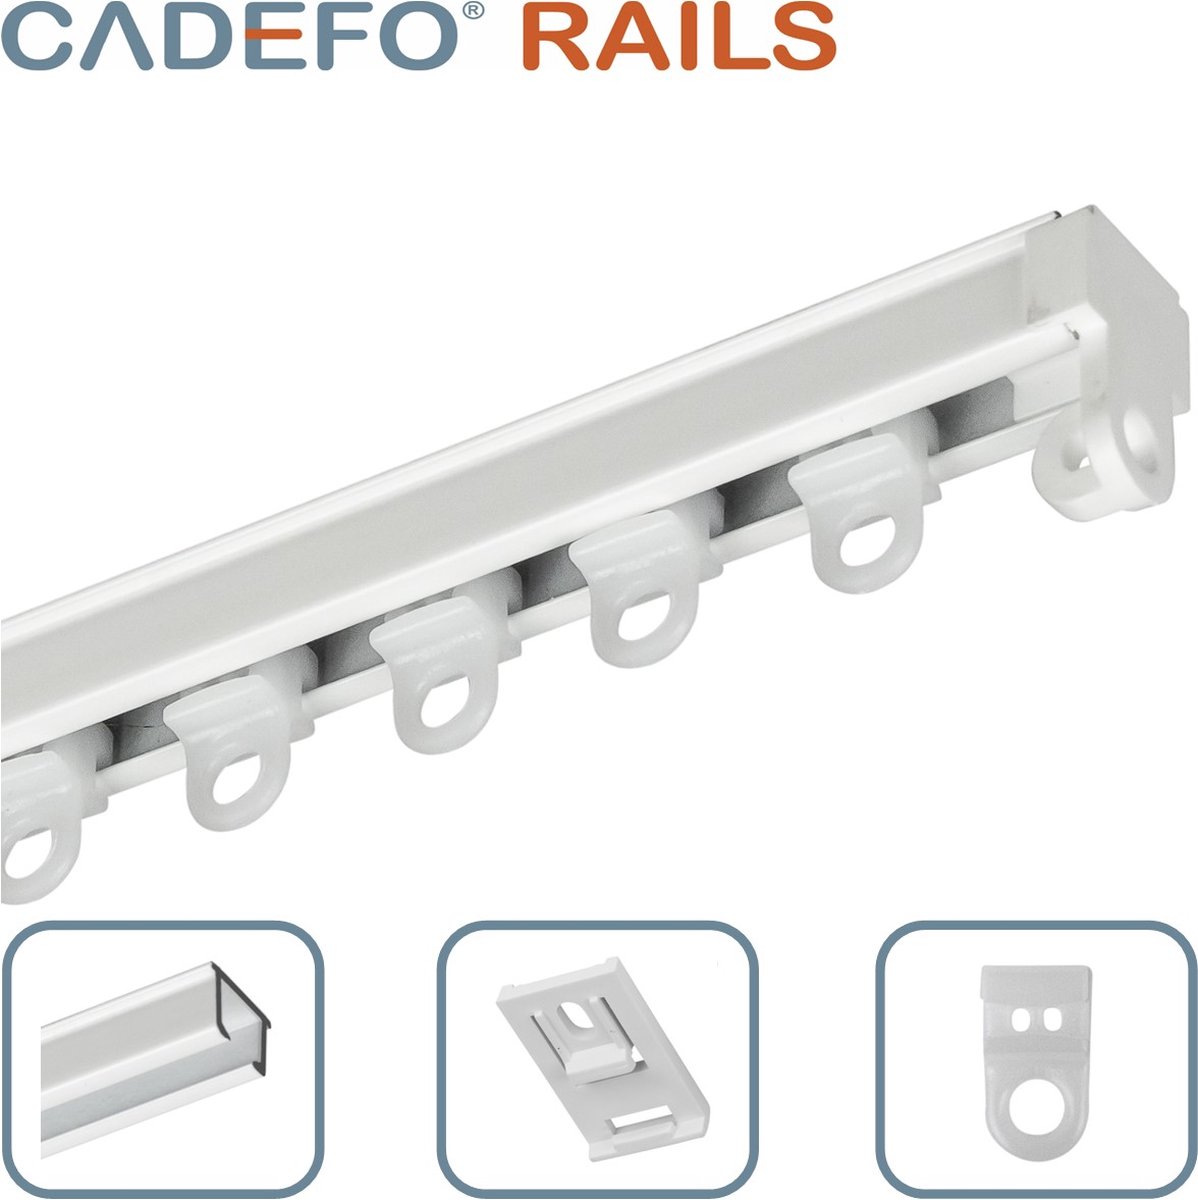 CADEFO RAILS (301 - 350 cm) Gordijnrails - Compleet op maat! - UIT 1 STUK - Leverbaar tot 6 meter - Plafondbevestiging - Lengte 318 cm